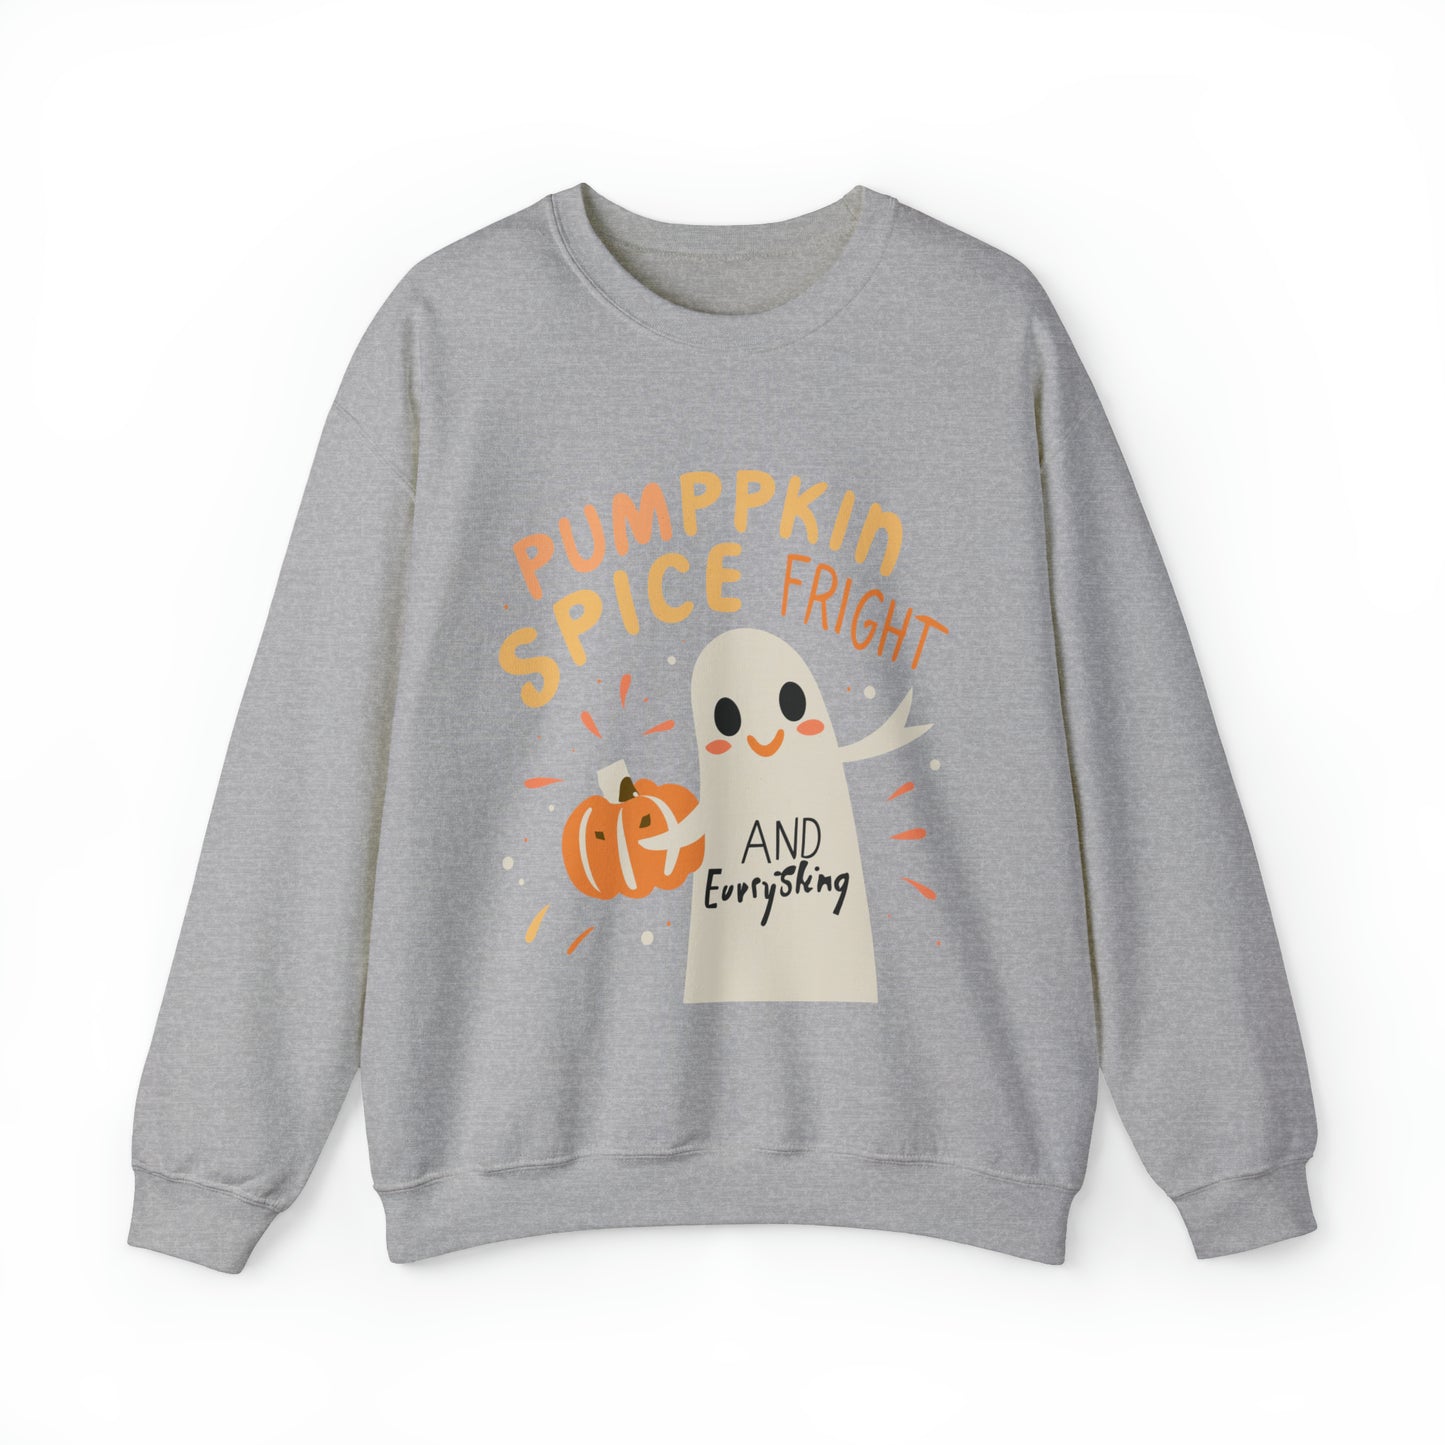 Pumppkin Spice Fright Sweatshirt, Spooky Season Halloween Sweatshirt, Winter Sweatshirt, Spooky Sweatshirt, Halloween Gifts